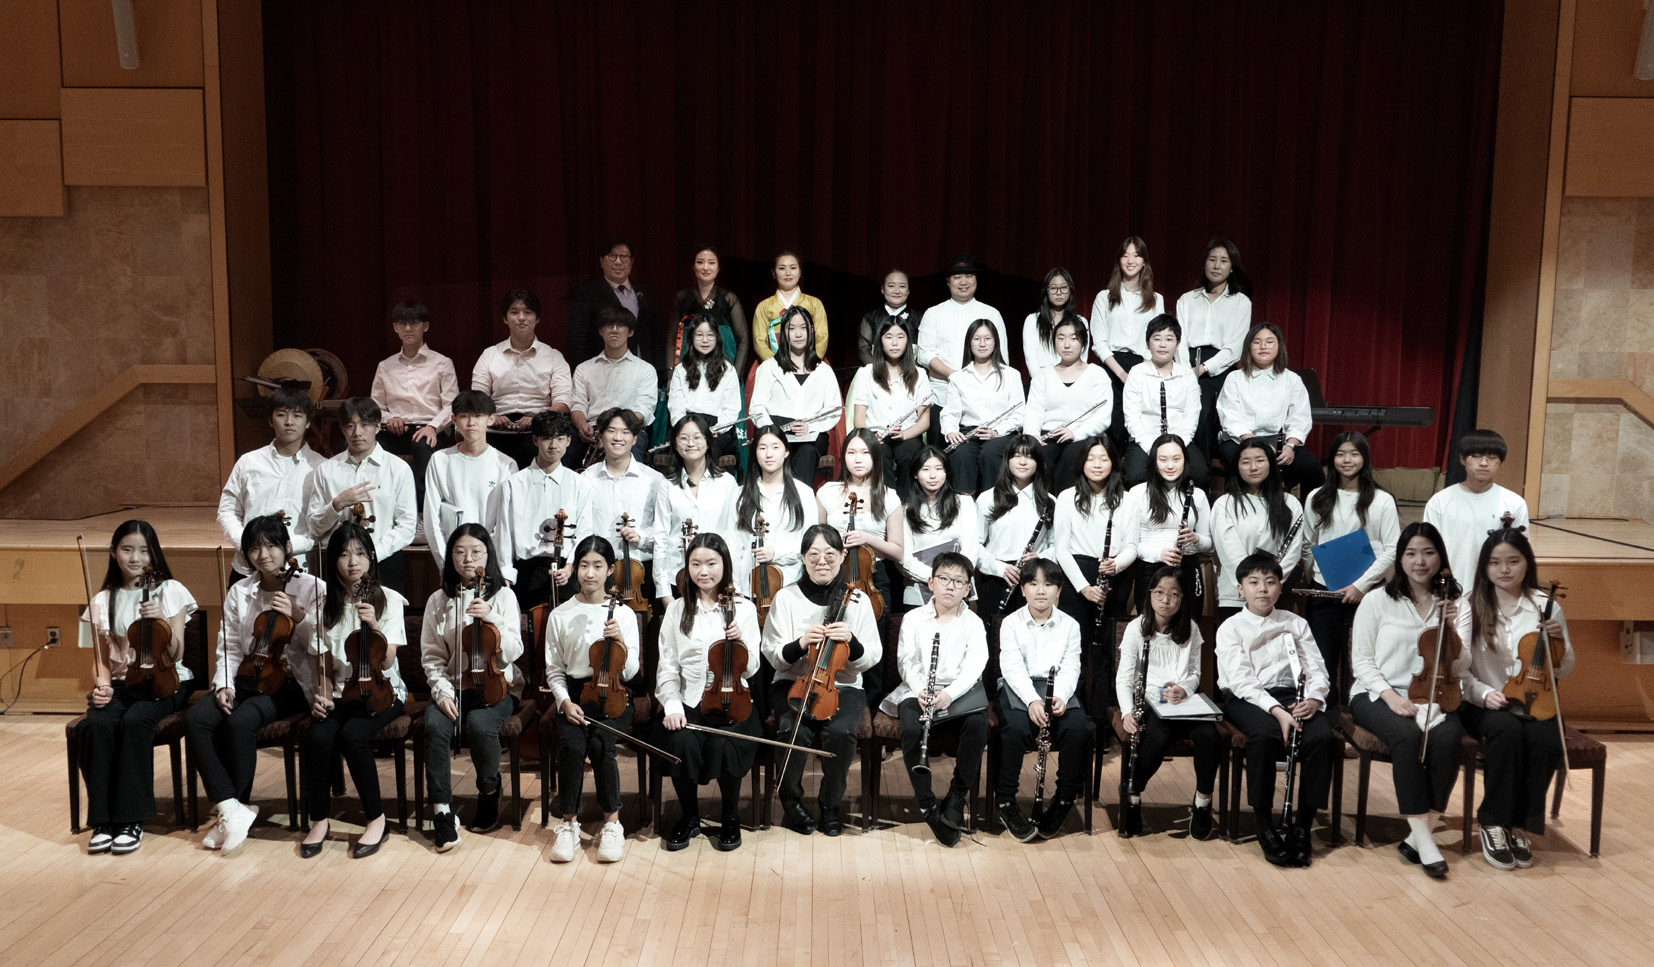 KCC 한인동포회관은 지난 8일 주류 사회에 한국 문화를 소개하기 위해 퓨전 전통음악 공연팀 ‘지화자(G-Hwaja)’와 ‘나눔 하모니 오케스트라(NaNum Harmony Orchestra)’ 협연으로 제18회 '한국의 흥' 공연을 개최했다. [사진 KCC 한인동포회관] 